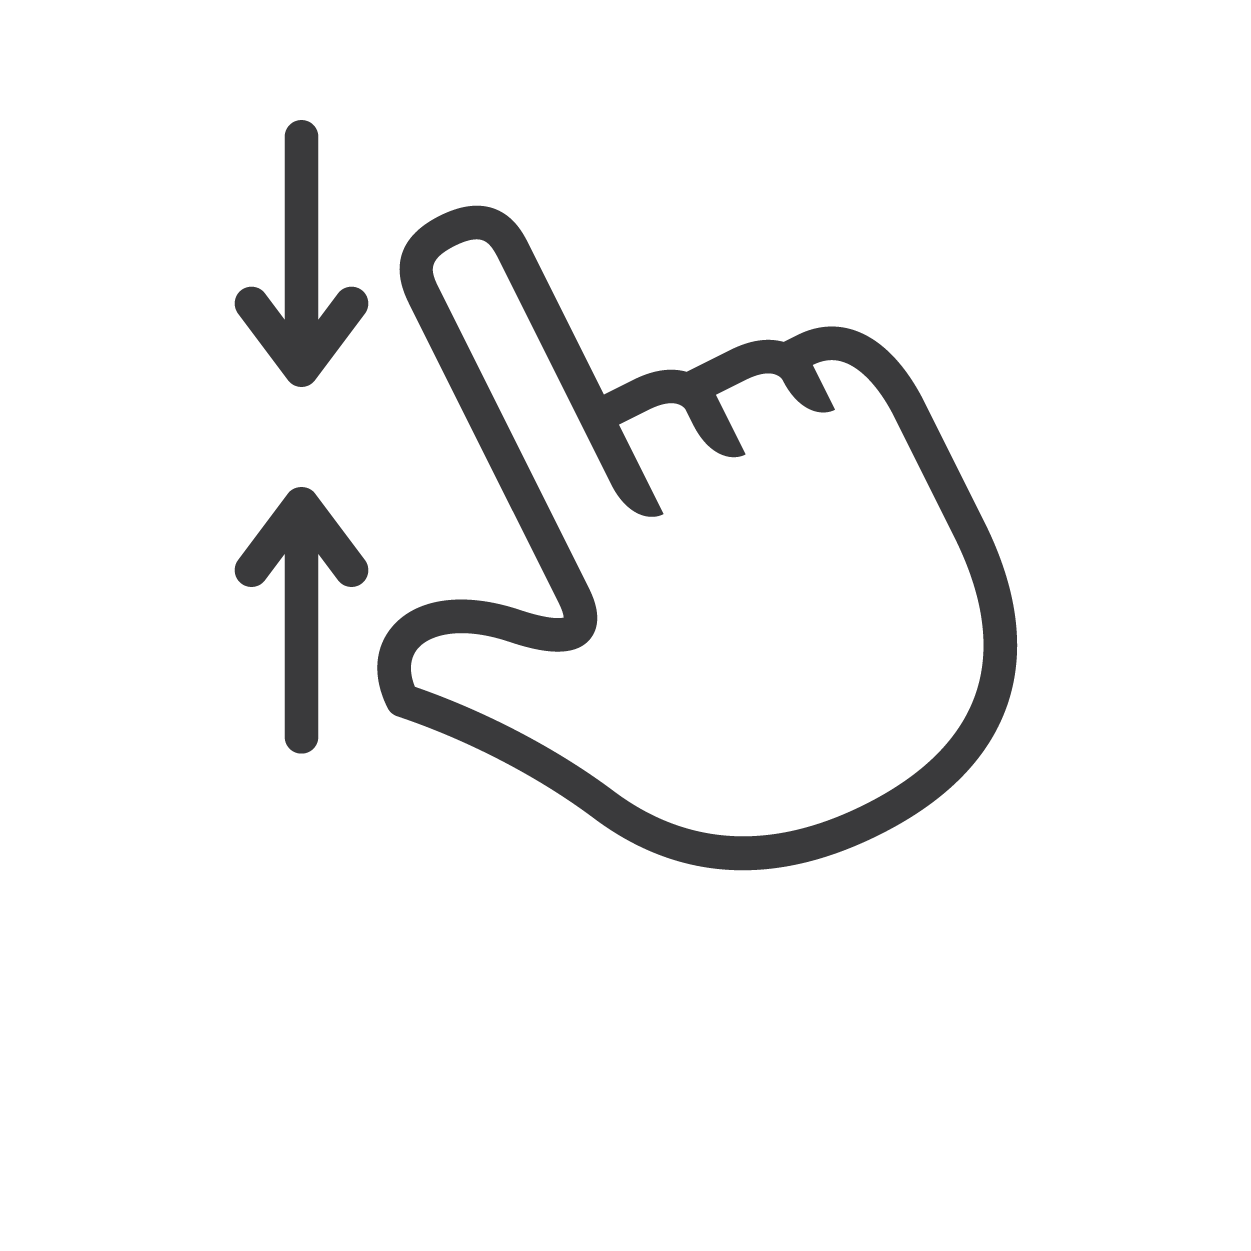 Il gesto “pizzica per rimpicciolire” per diminuire lo zoom su un dispositivo smart